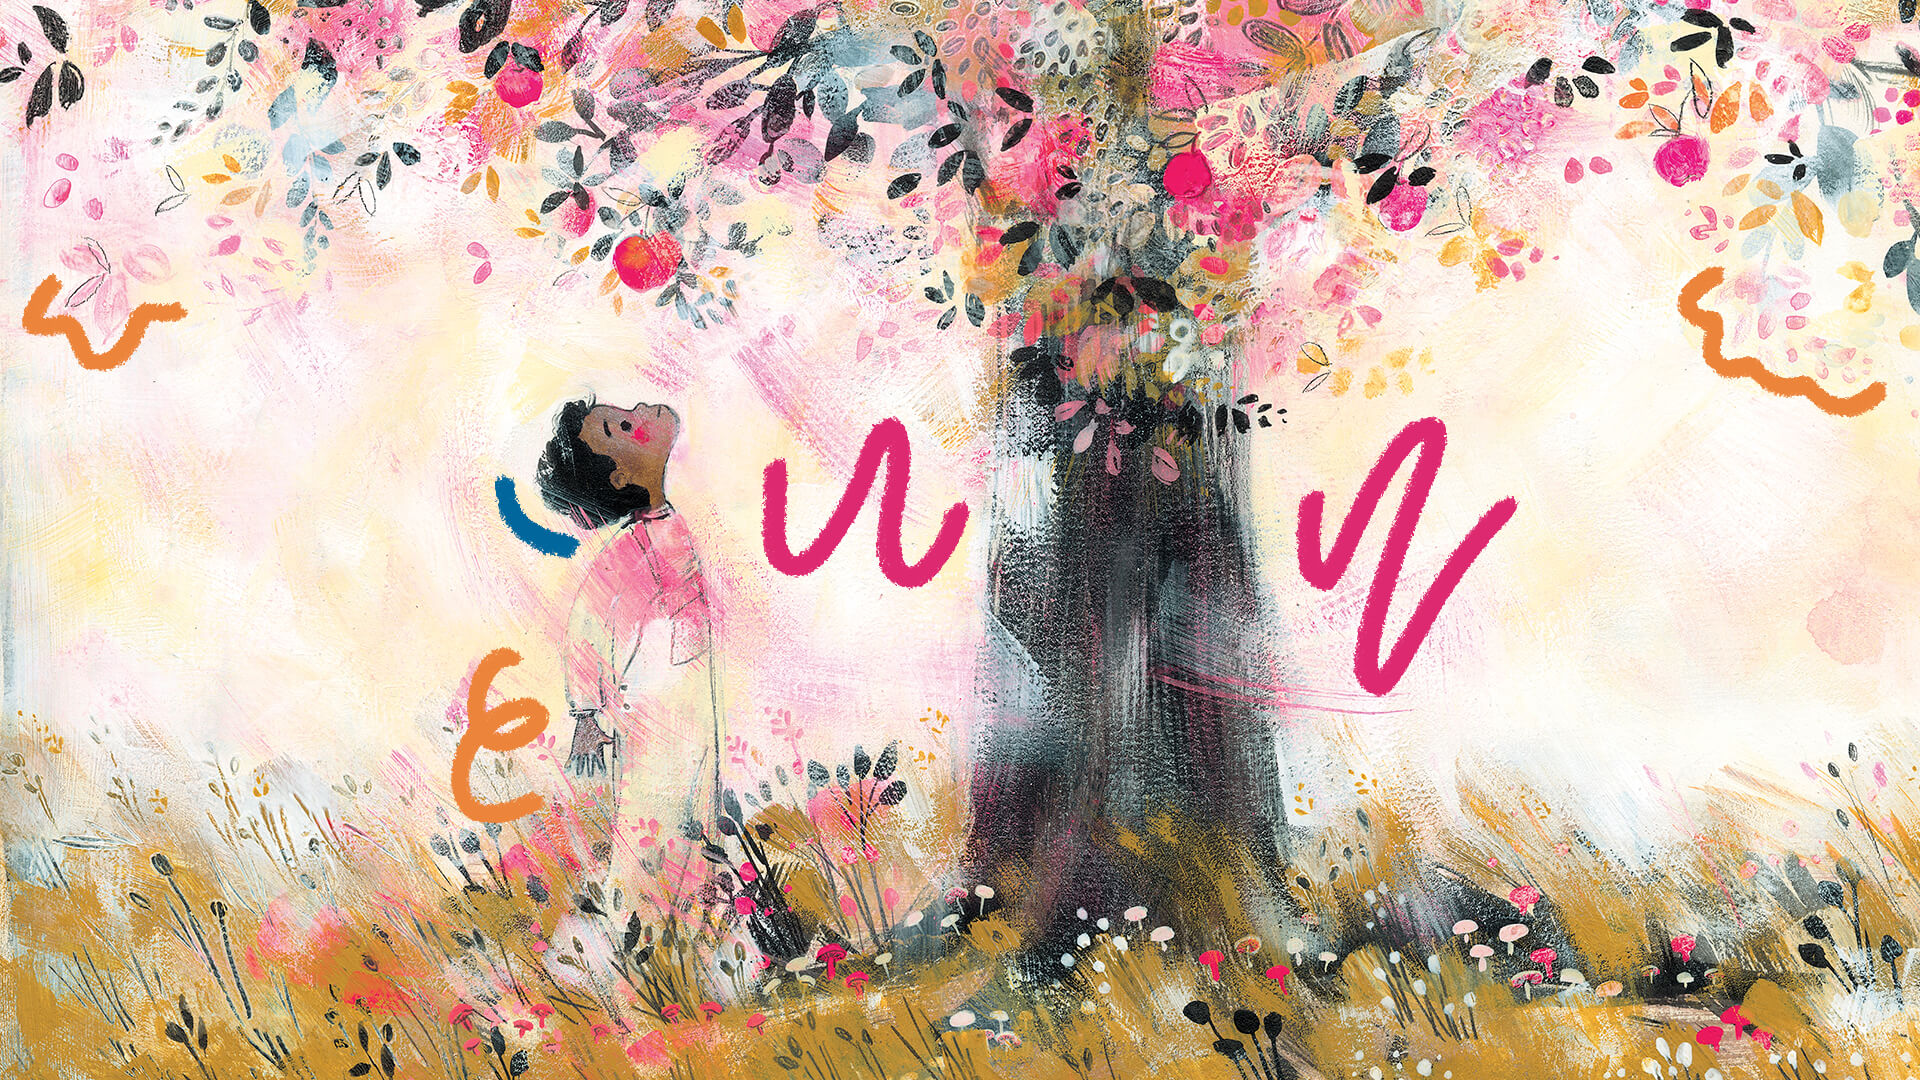 Ilustração que abre o livro "A árvore em mim", em que uma criança olha para a copa de uma árvore florida em que tons de rosa predominam.